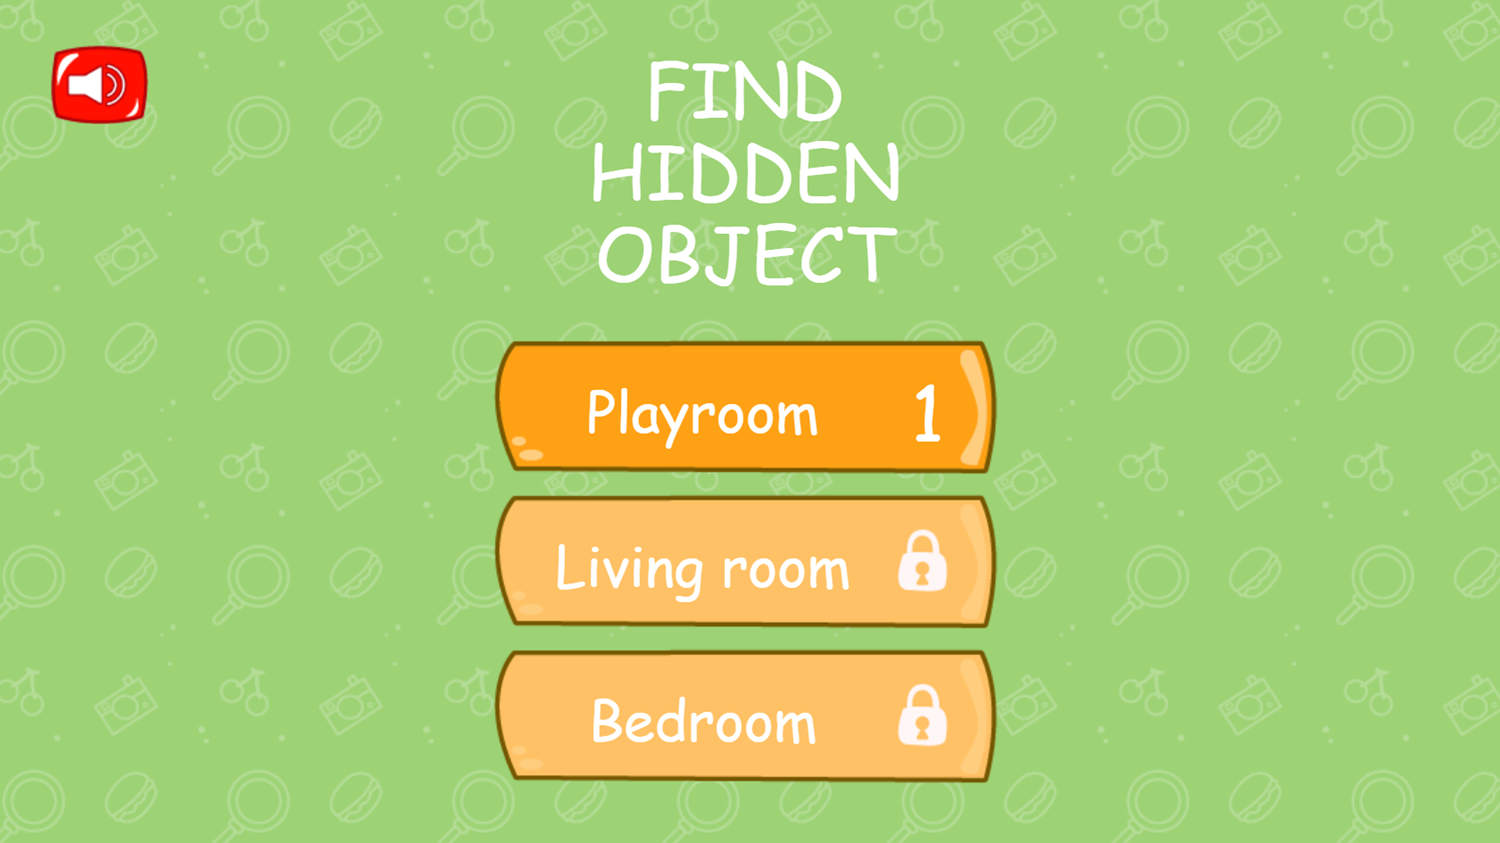 Find Hidden Object Game Welcome Screen Screenshot.